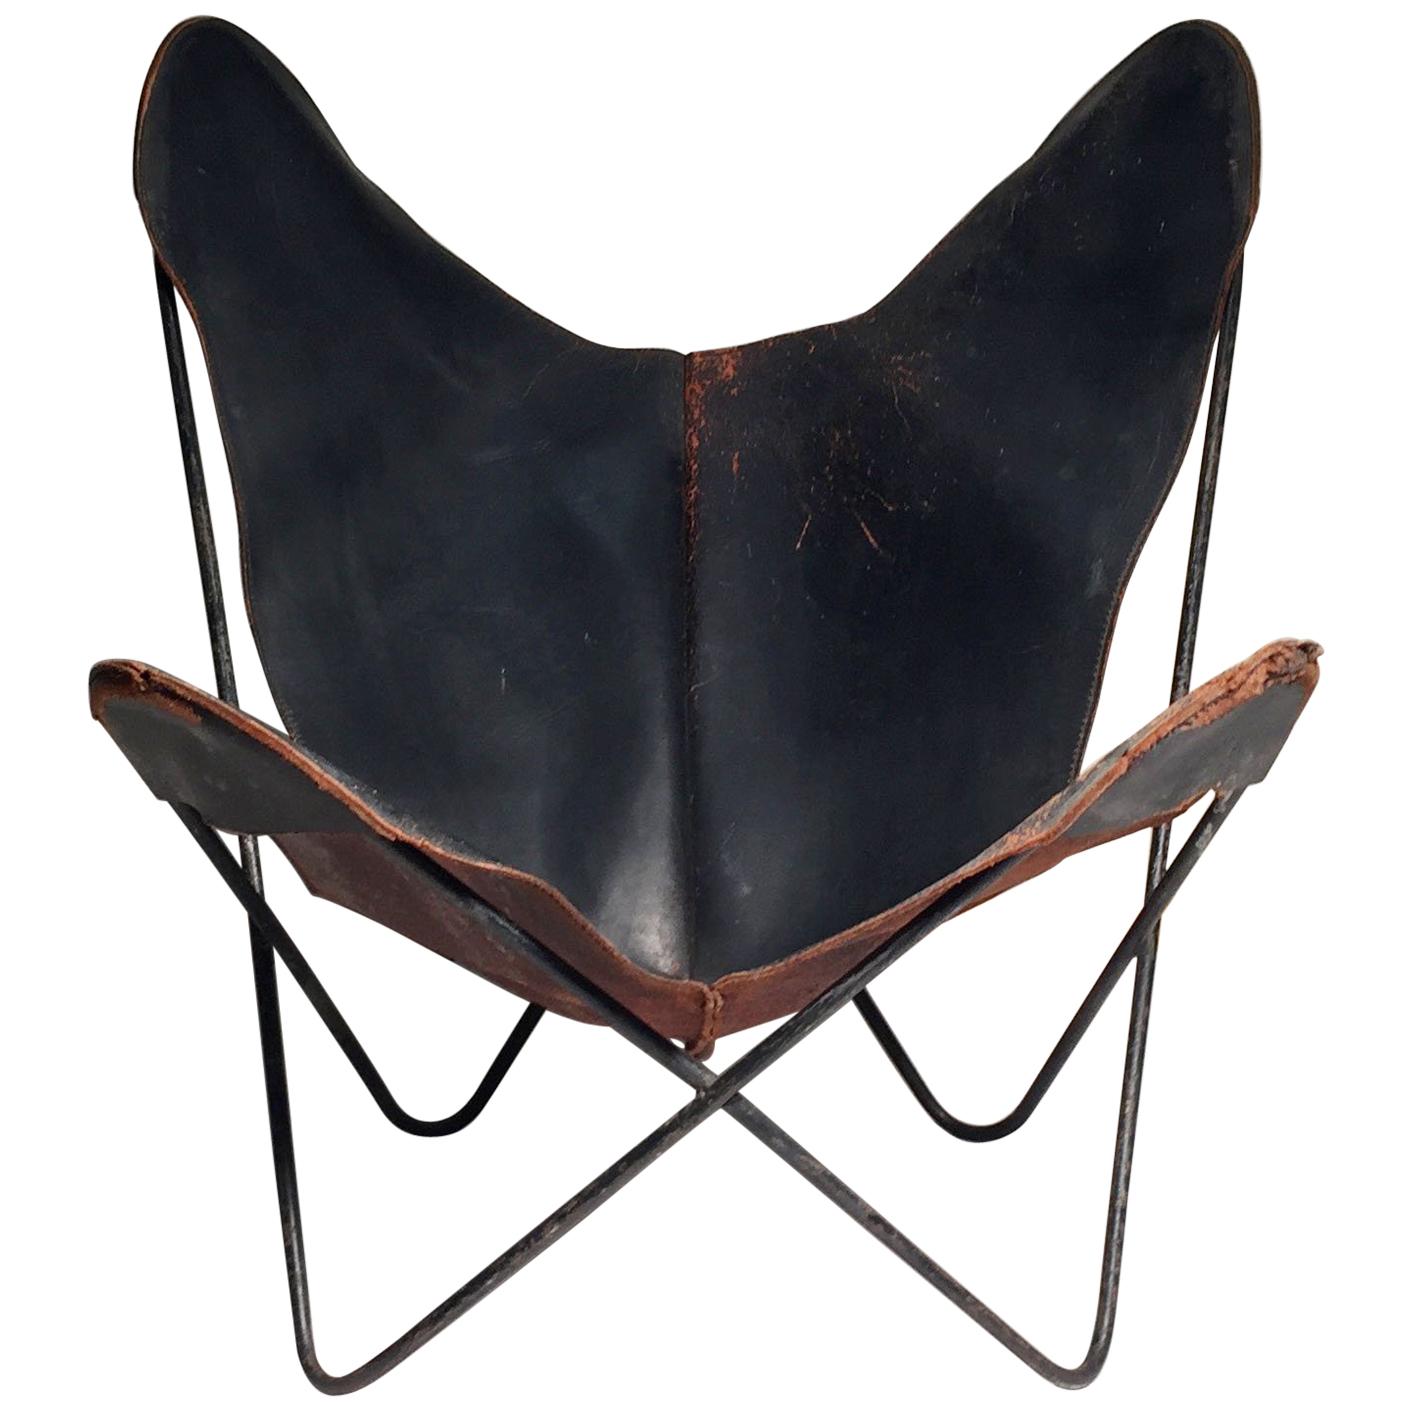 Early Knoll Butterfly Chair by Jorge Ferrari-Hardoy Juan Kurchann Antonio Bonet